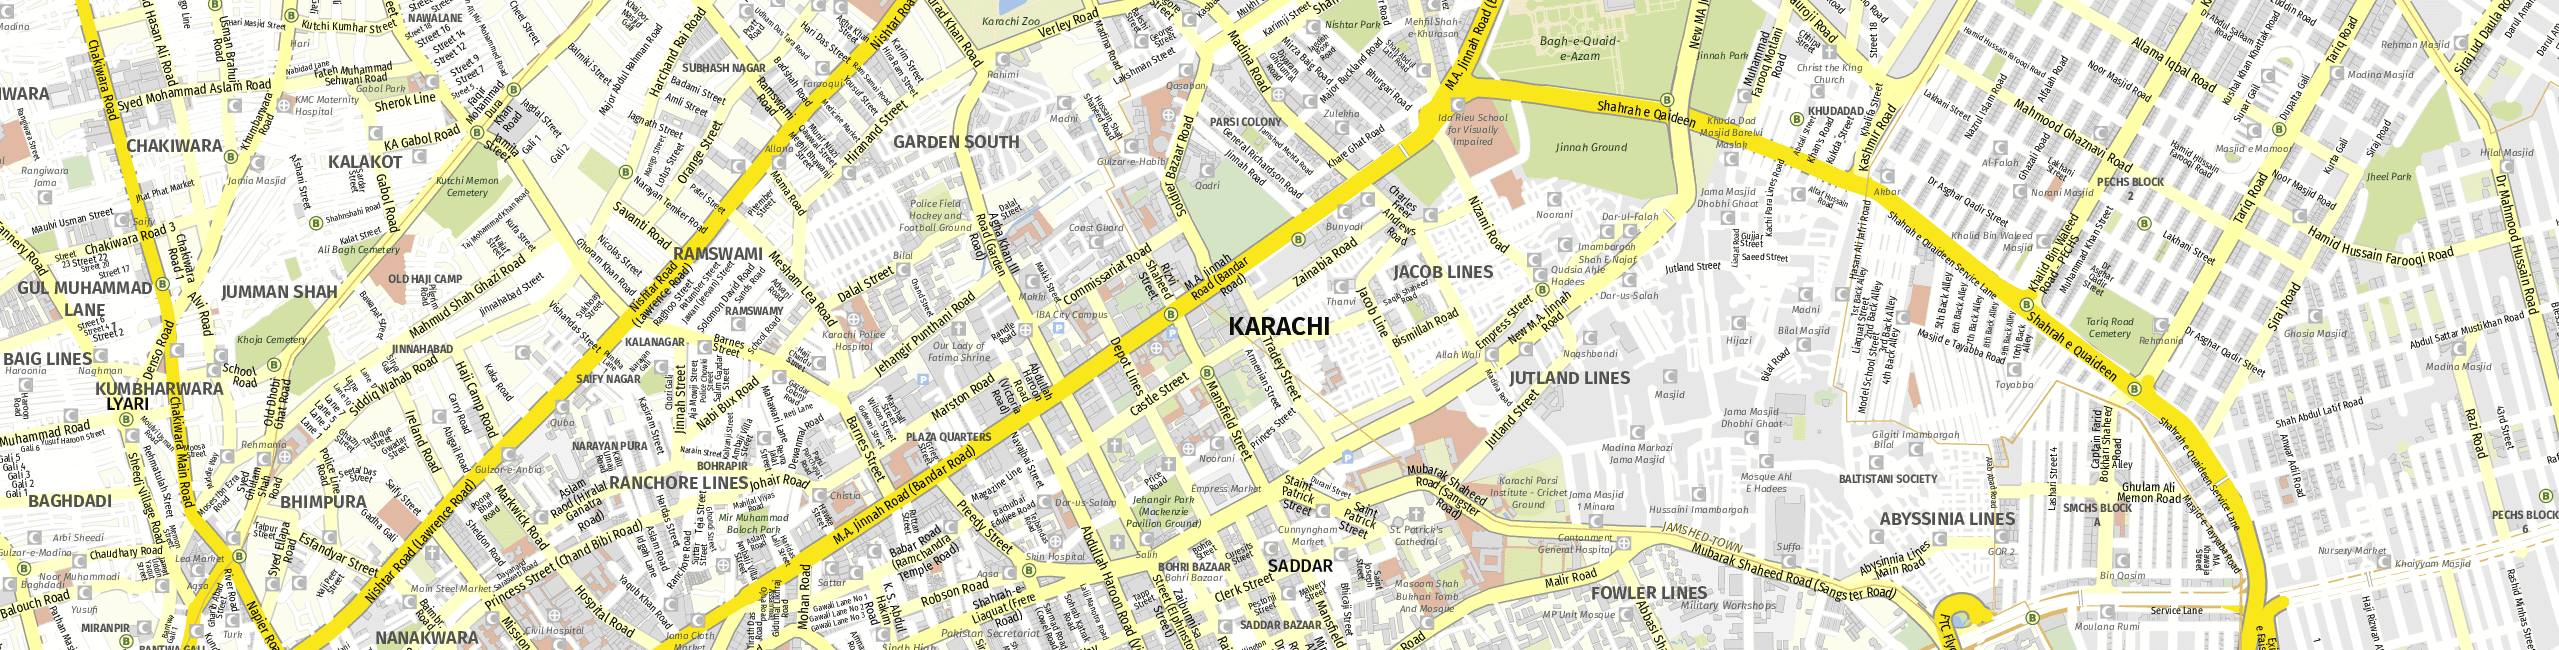 Stadtplan Karatschi zum Downloaden.